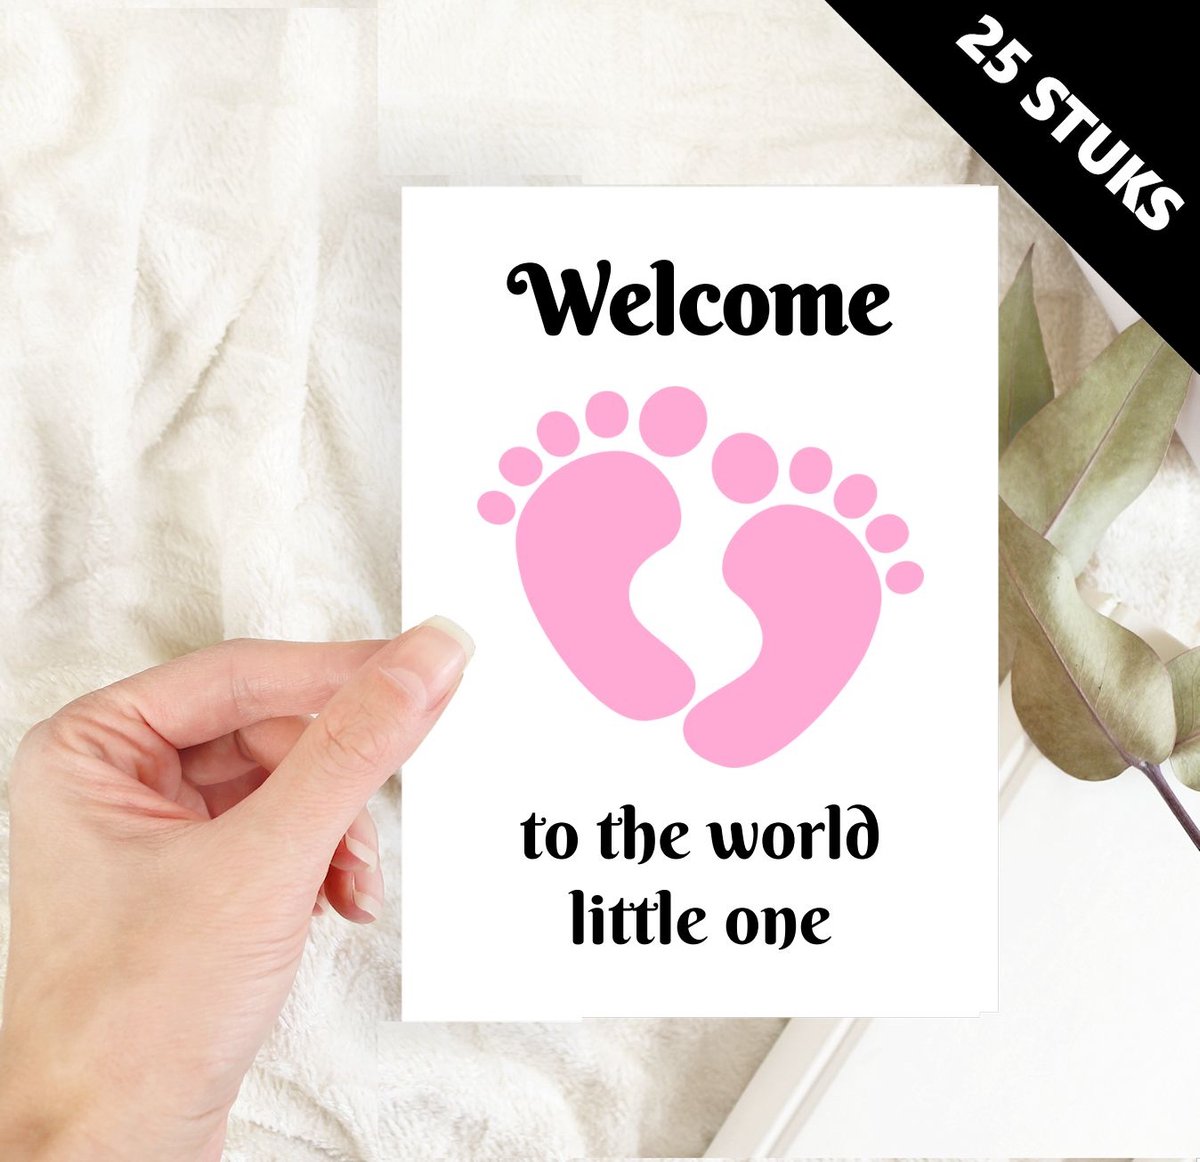 Baby geboortekaartjes ansichtkaarten welcome little one roze meisjes voetjes - 25 stuks A6 formaat enkele kaart excl. envelop - groothandel wholesale cadeau wenskaarten